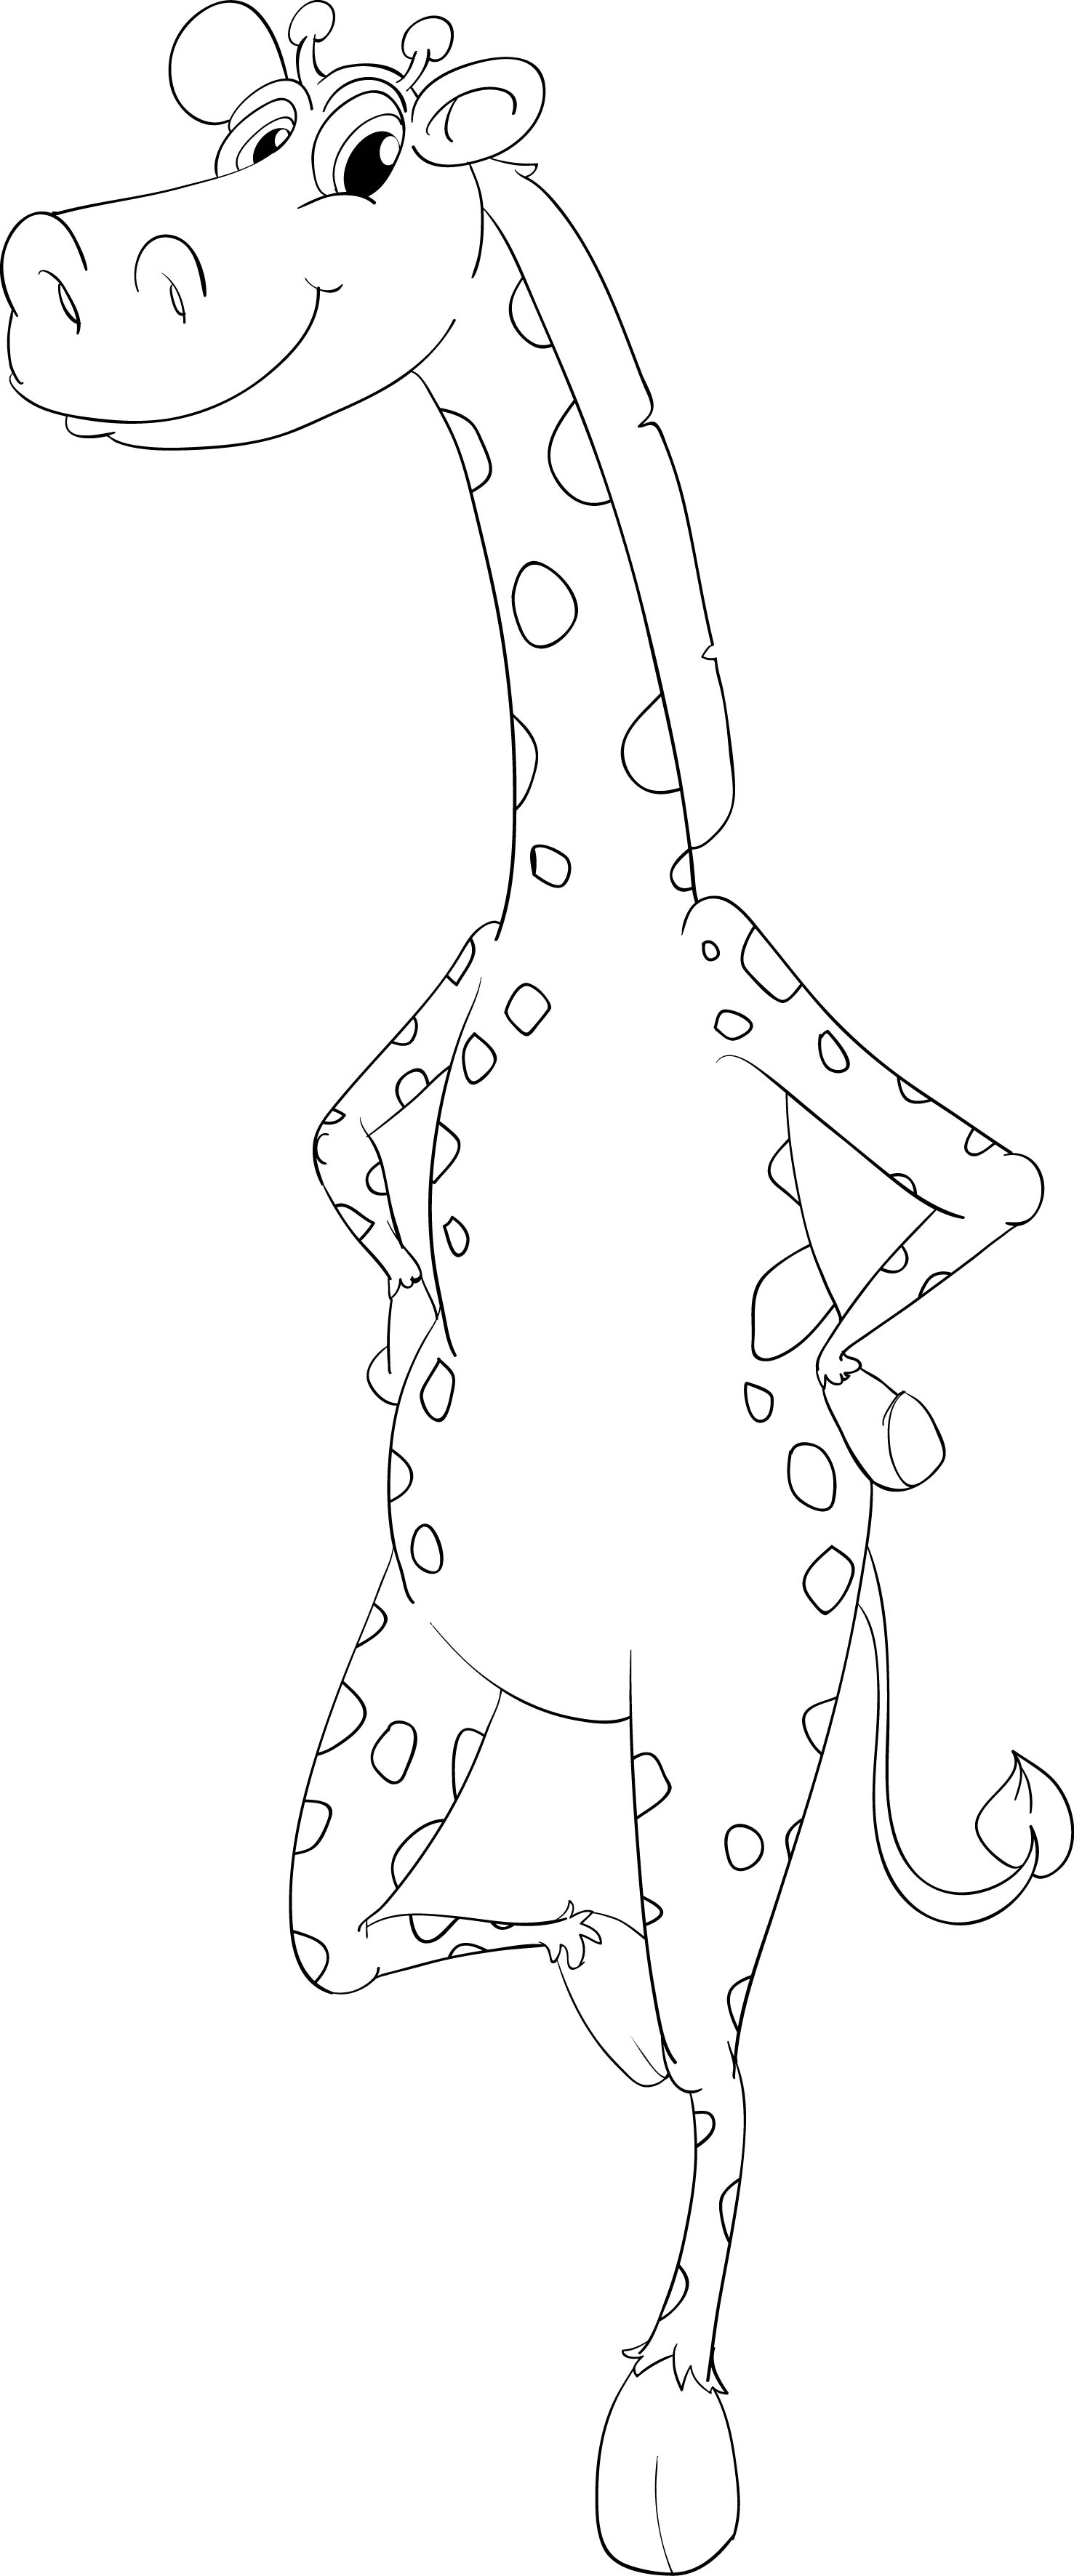 Раскраска игривый жираф из мультика стоит на двух ногах формата А4 в высоком качестве